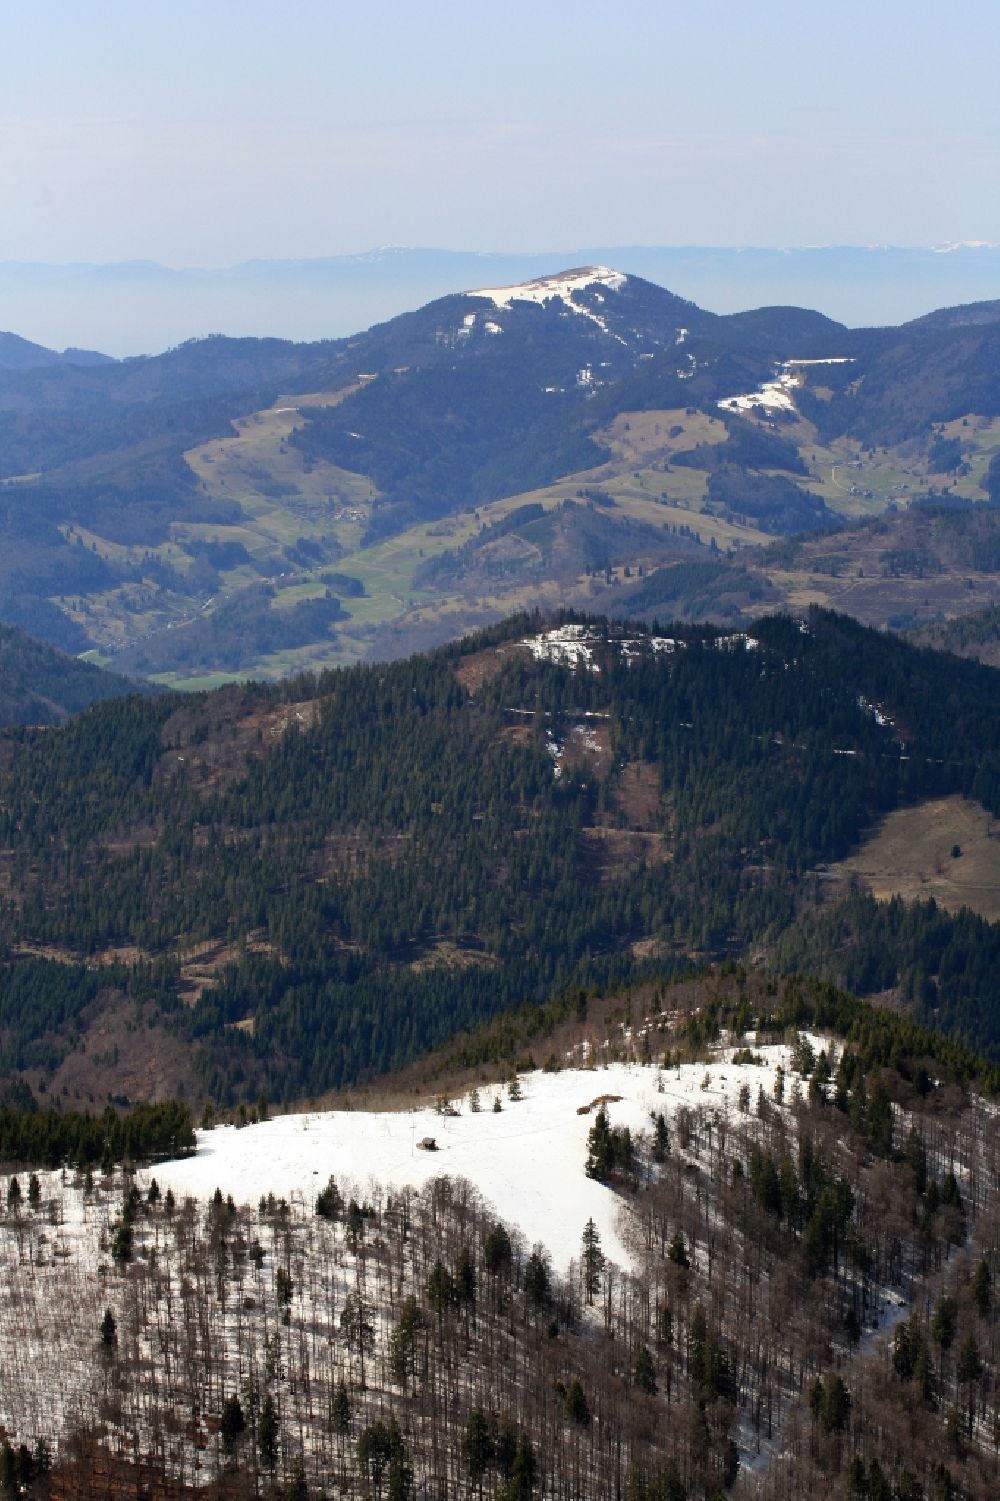 Bernau im Schwarzwald von oben - Blick über den schneebedeckten Berggipfel des Blößling in Bernau im Schwarzwald im Bundesland Baden-Württemberg, Deutschland, zur Gipfelregion des Belchen im Schwarzwald